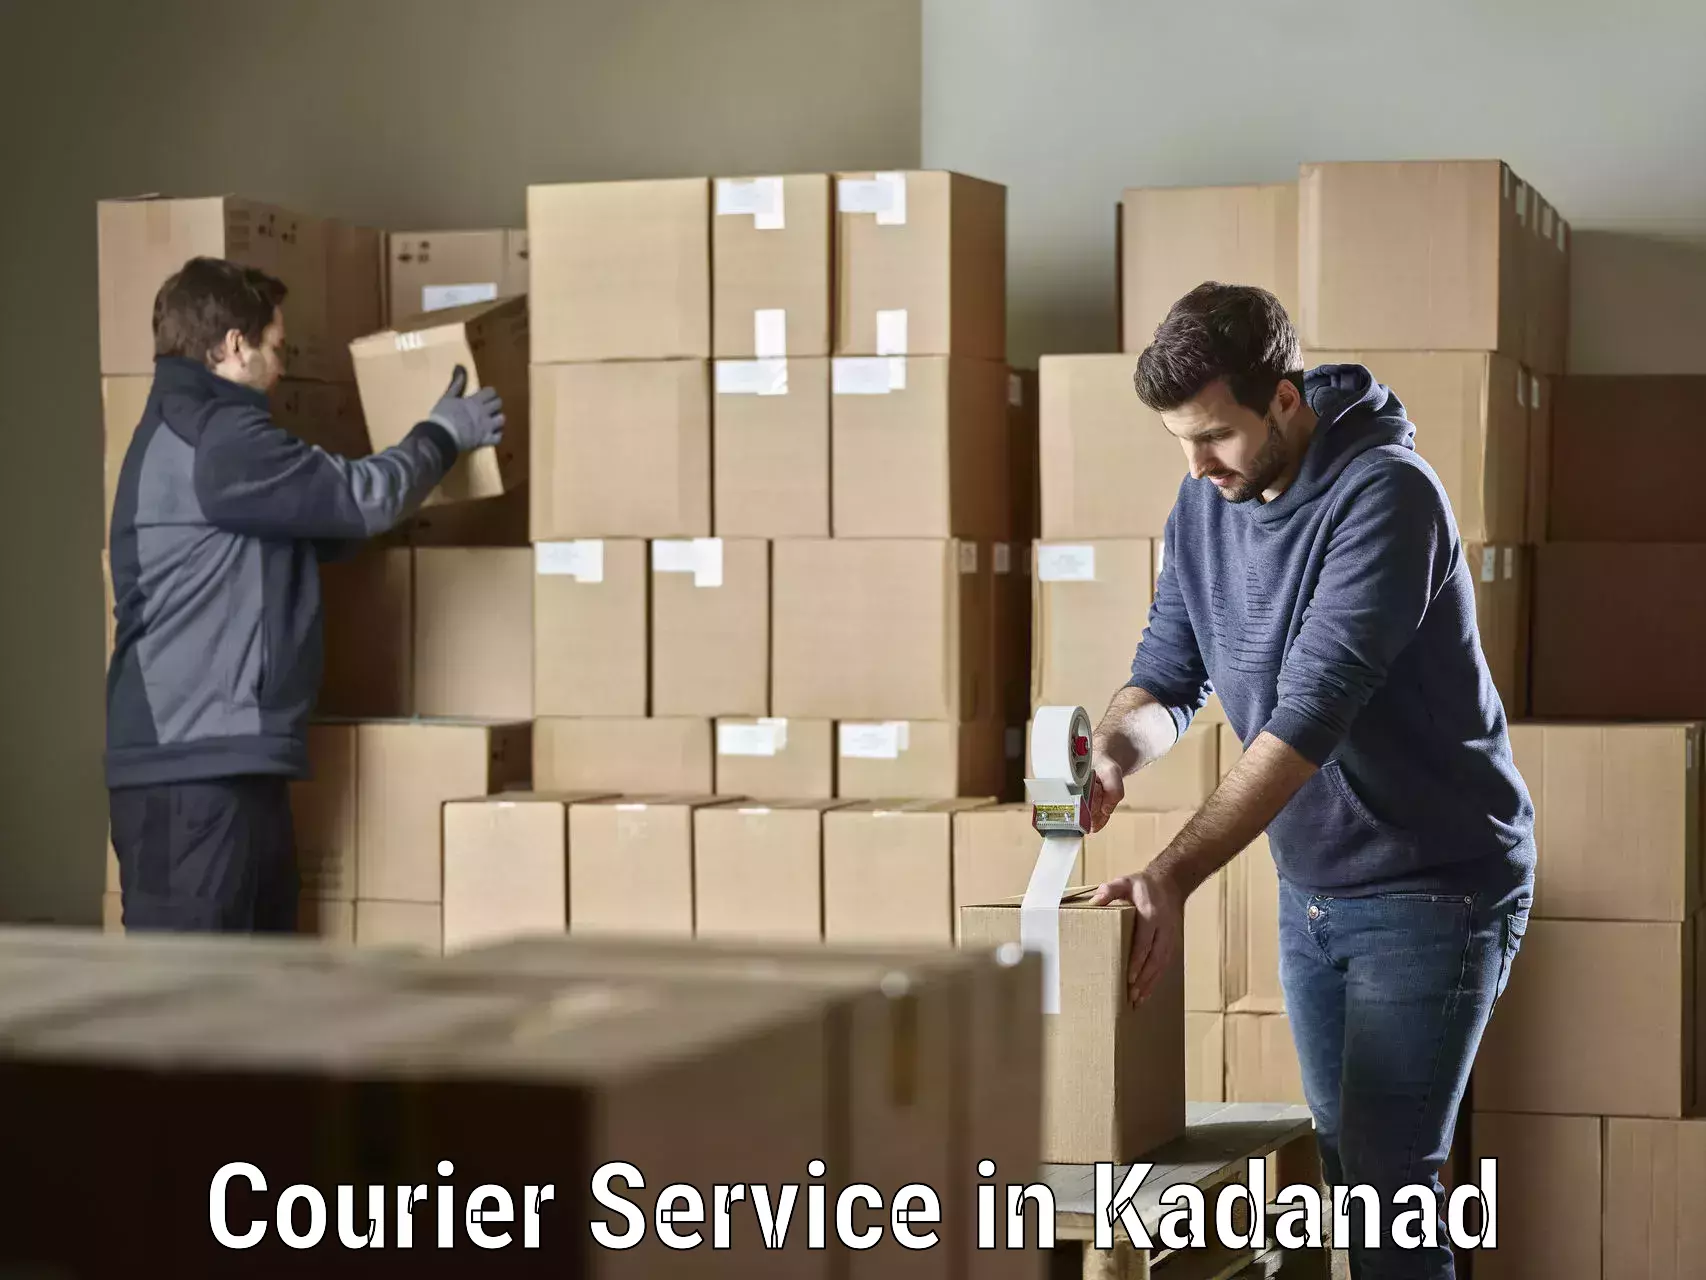 Express logistics providers in Kadanad